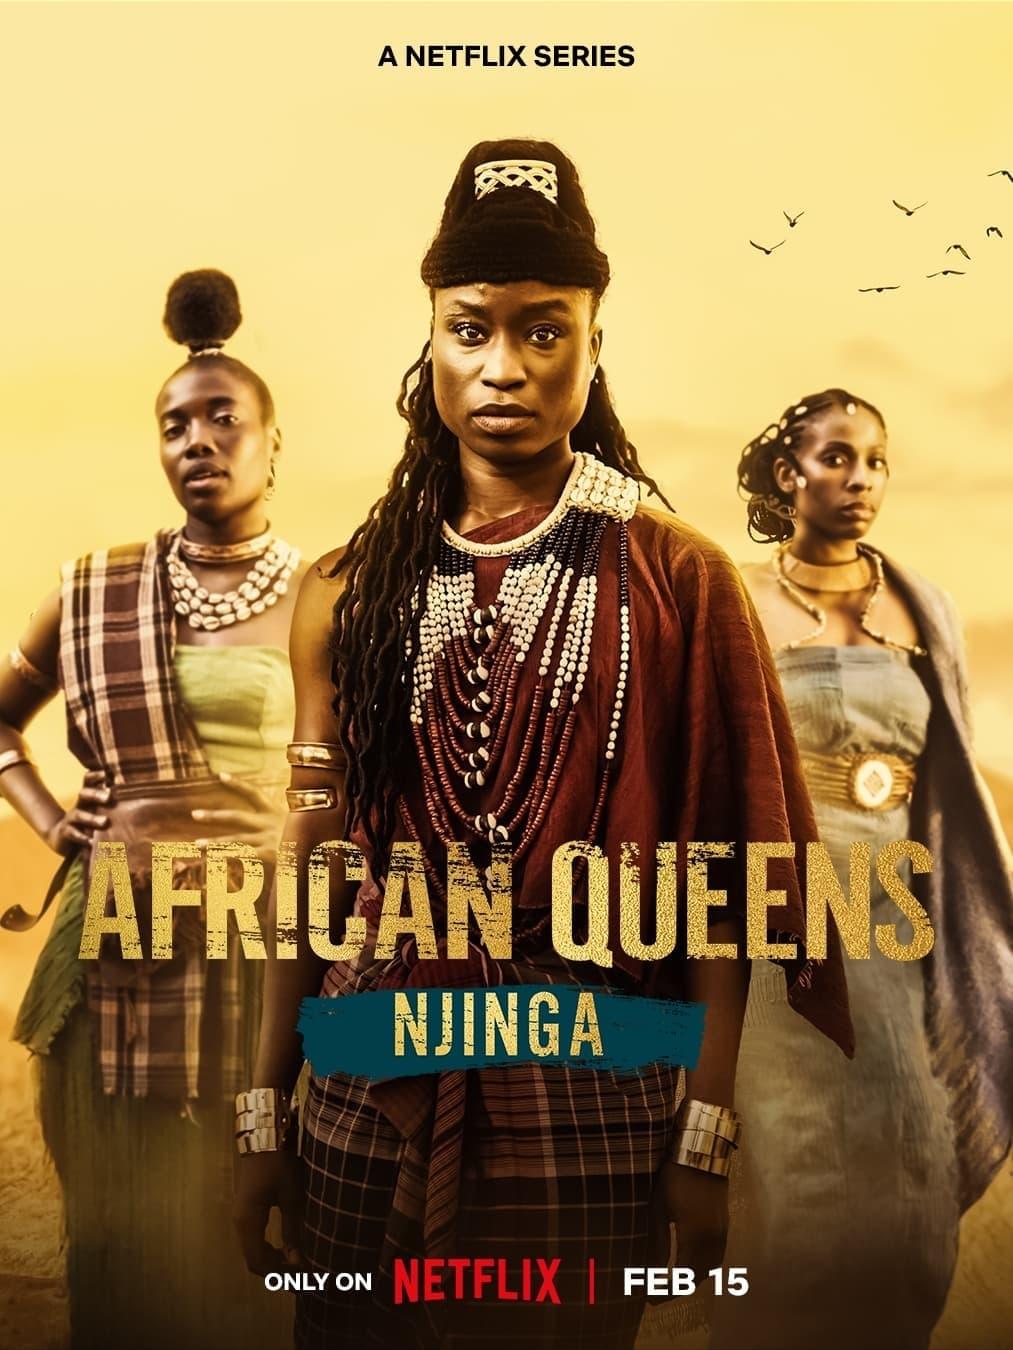 African Queens: Njinga poster